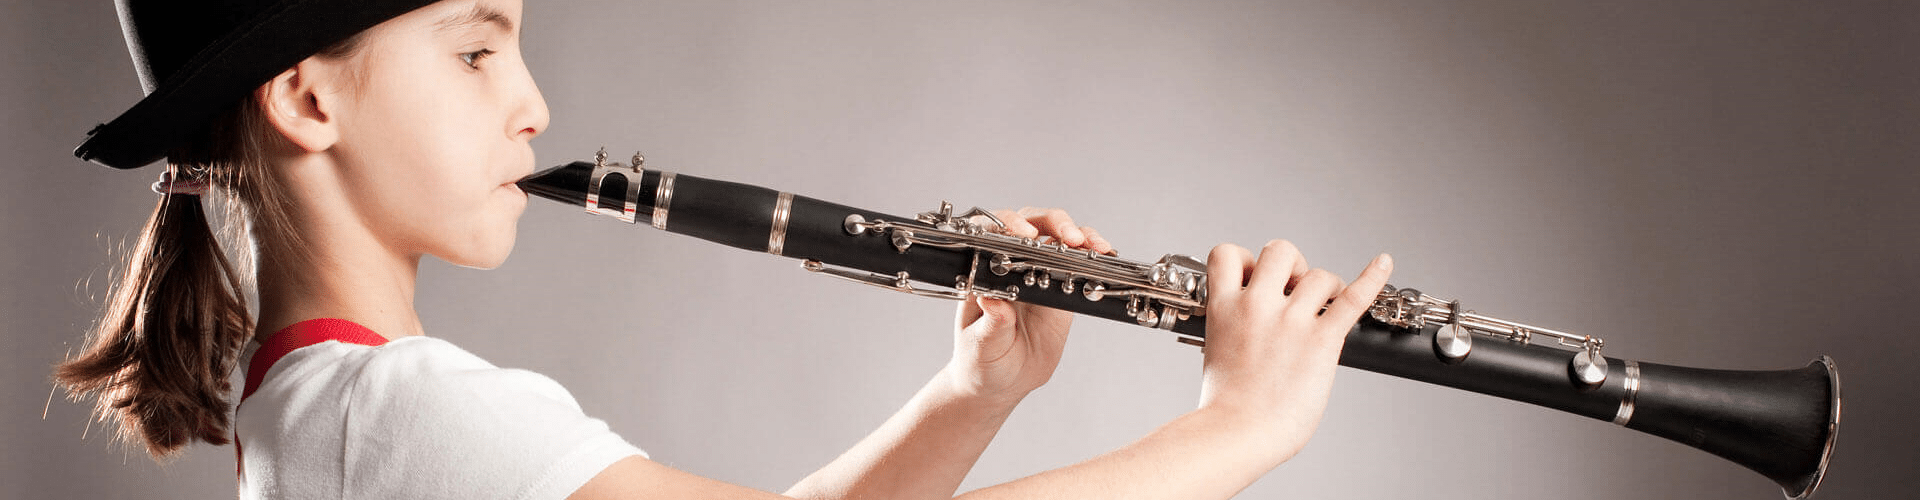 SDENSHI Wood Recorder Clarinet Instrument Kids Beginner Toy Gift #1 